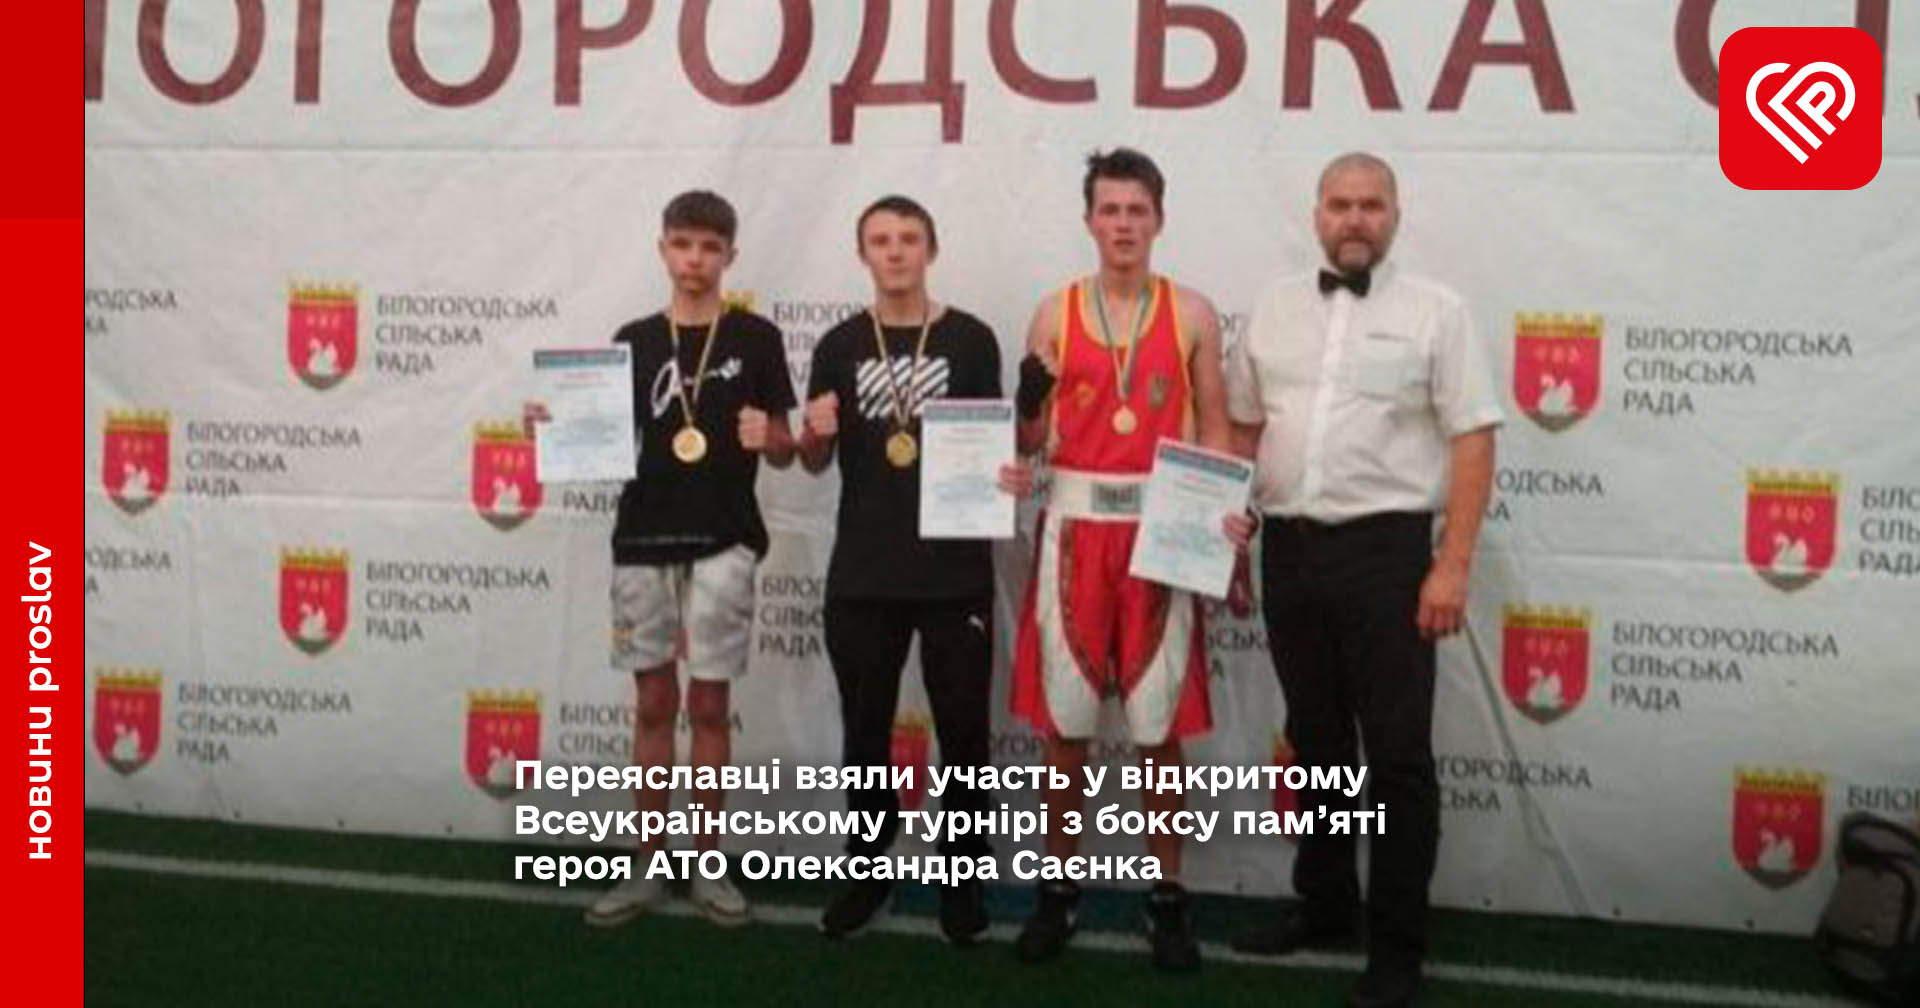 Переяславці взяли участь у відкритому Всеукраїнському турнірі з боксу пам’яті героя АТО Олександра Саєнка